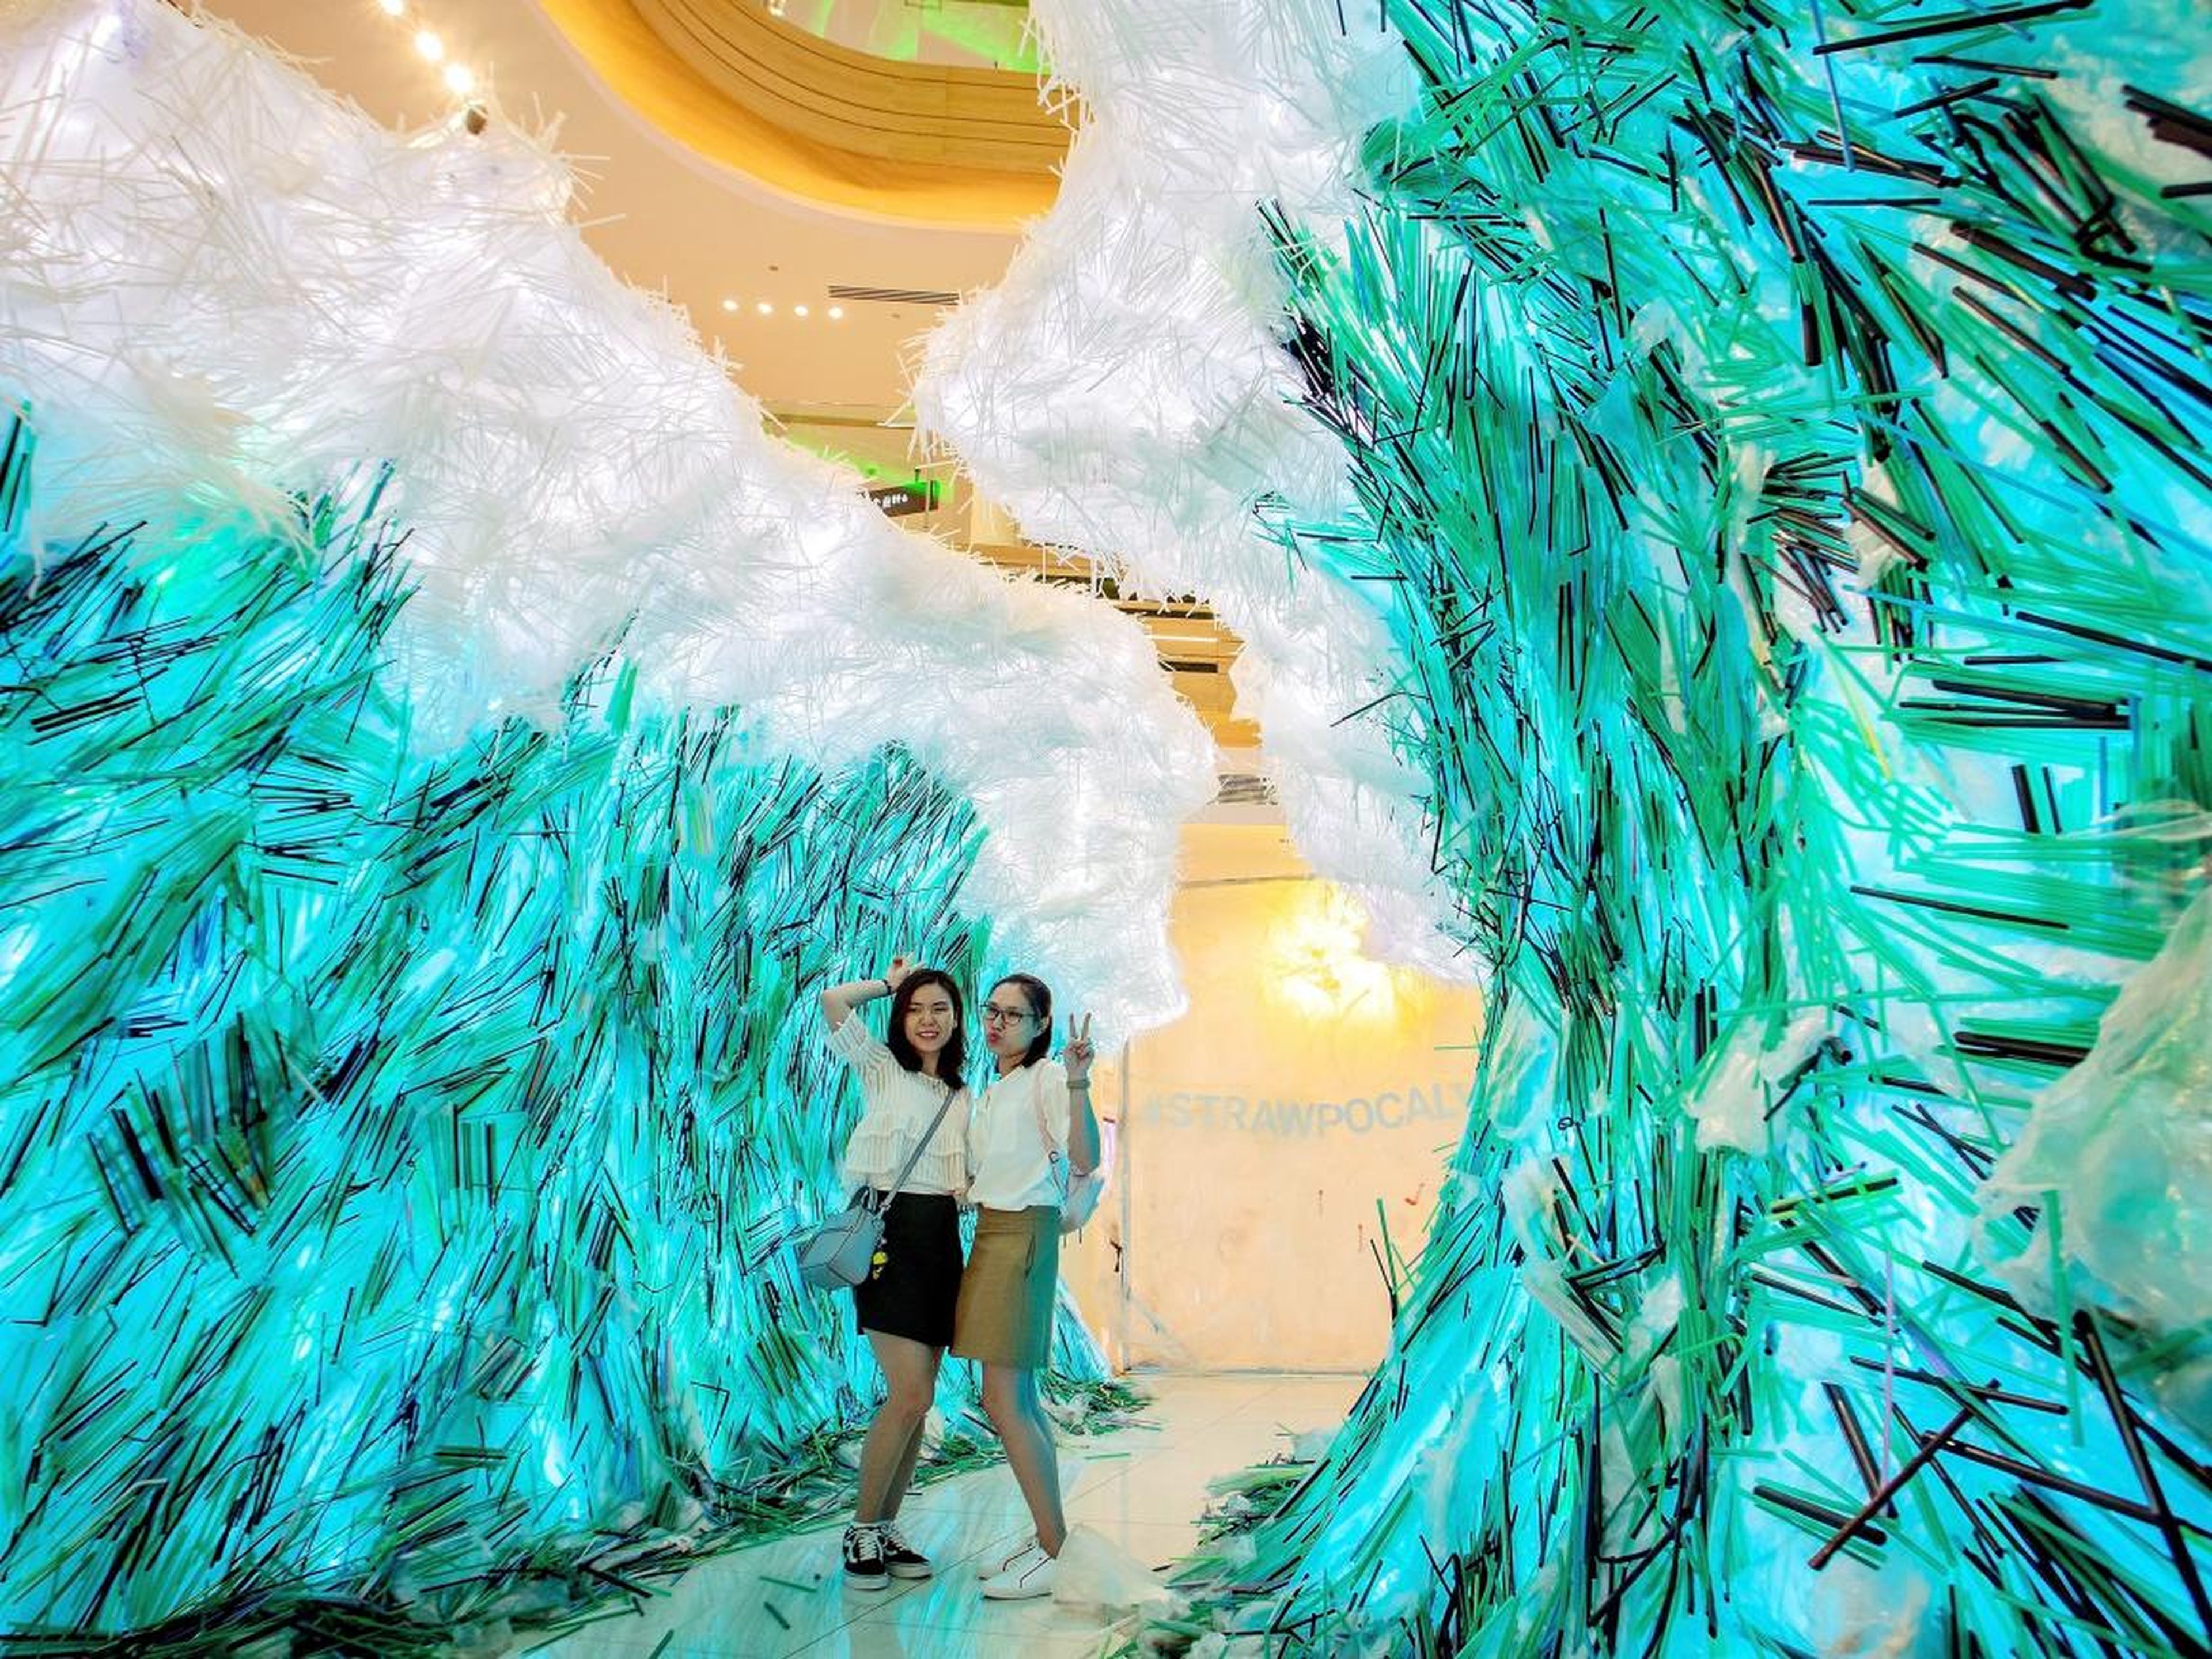 Esta instalación artística en la ciudad de Ho Chi Minh, Vietnam, fue elaborada con 168.037 pajitas de plástico.